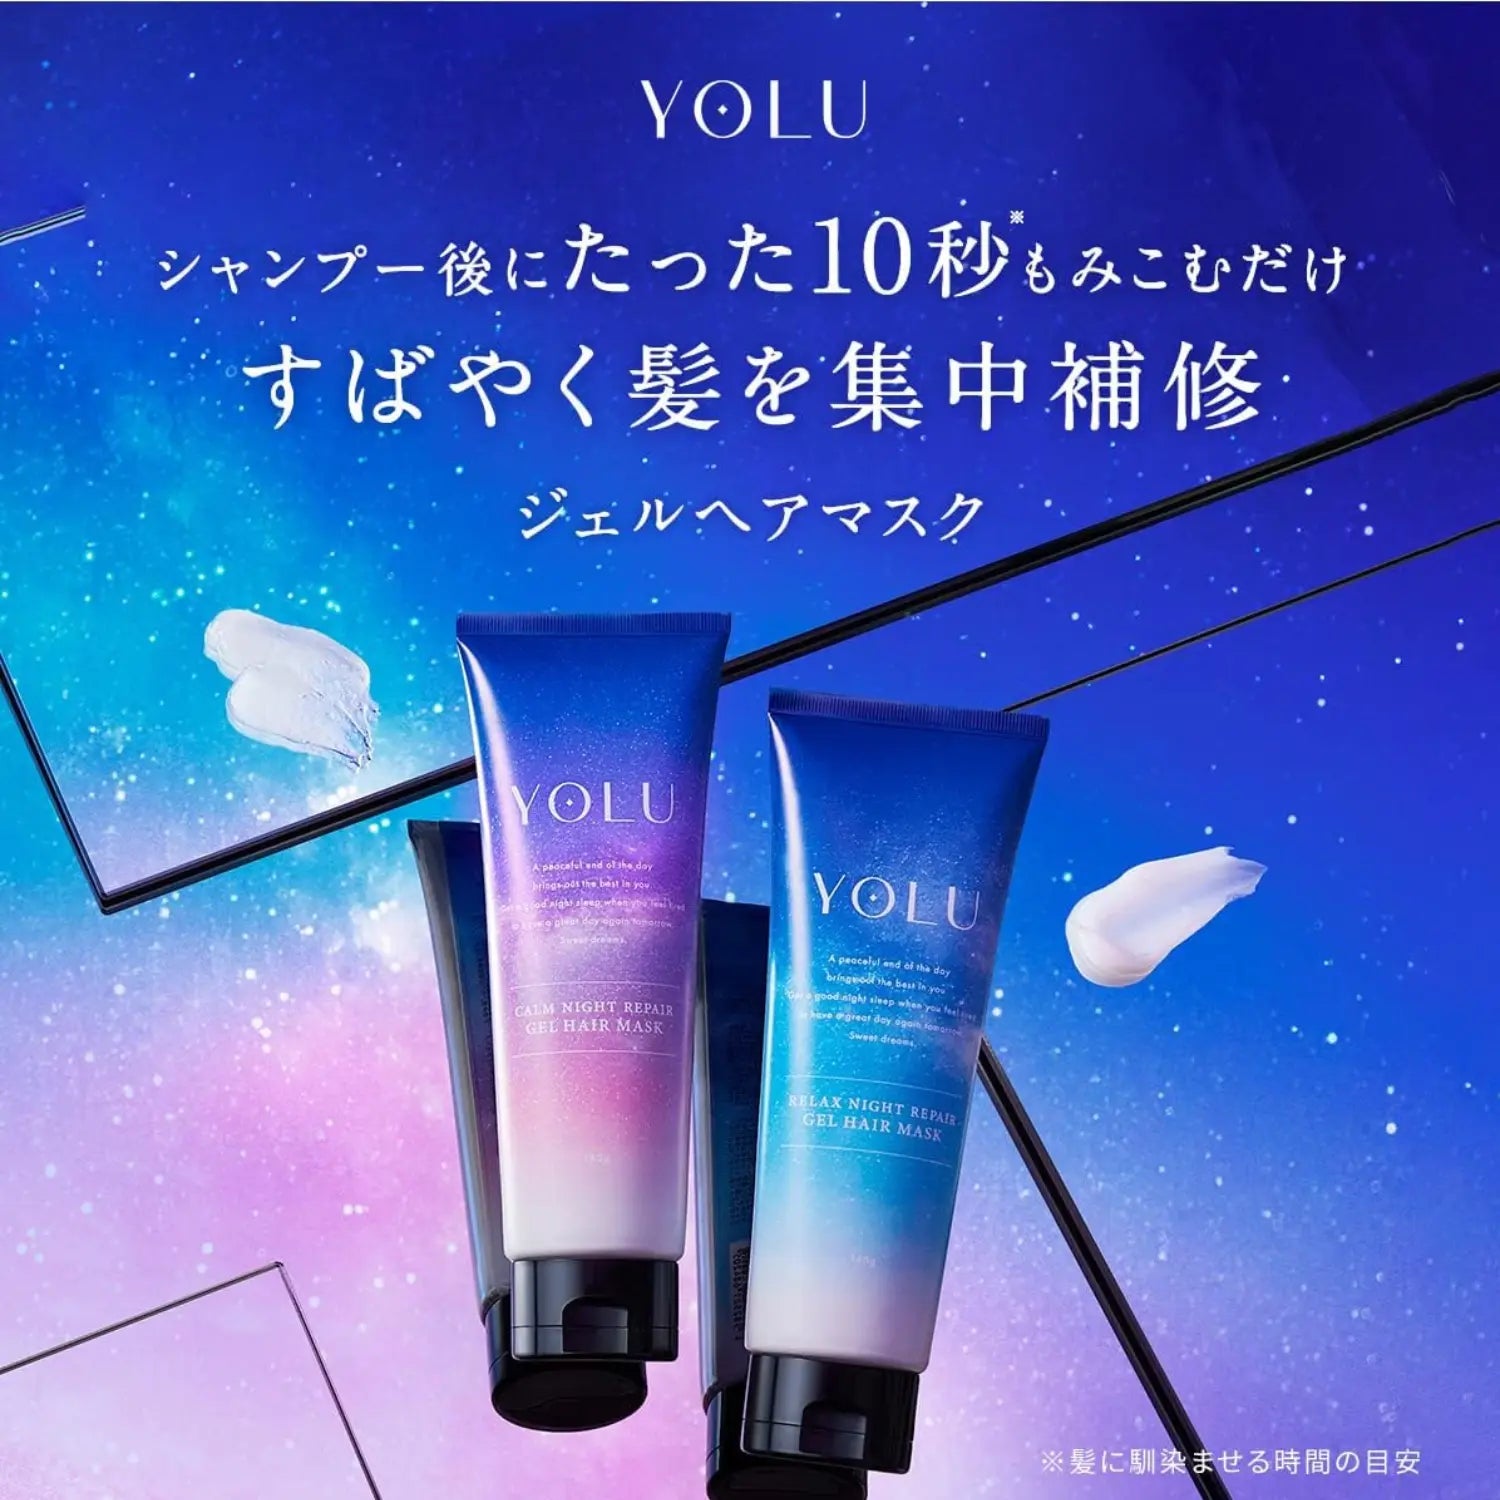 YOLU Calm Night Repair Hair Mask 145g - Buy Me Japan